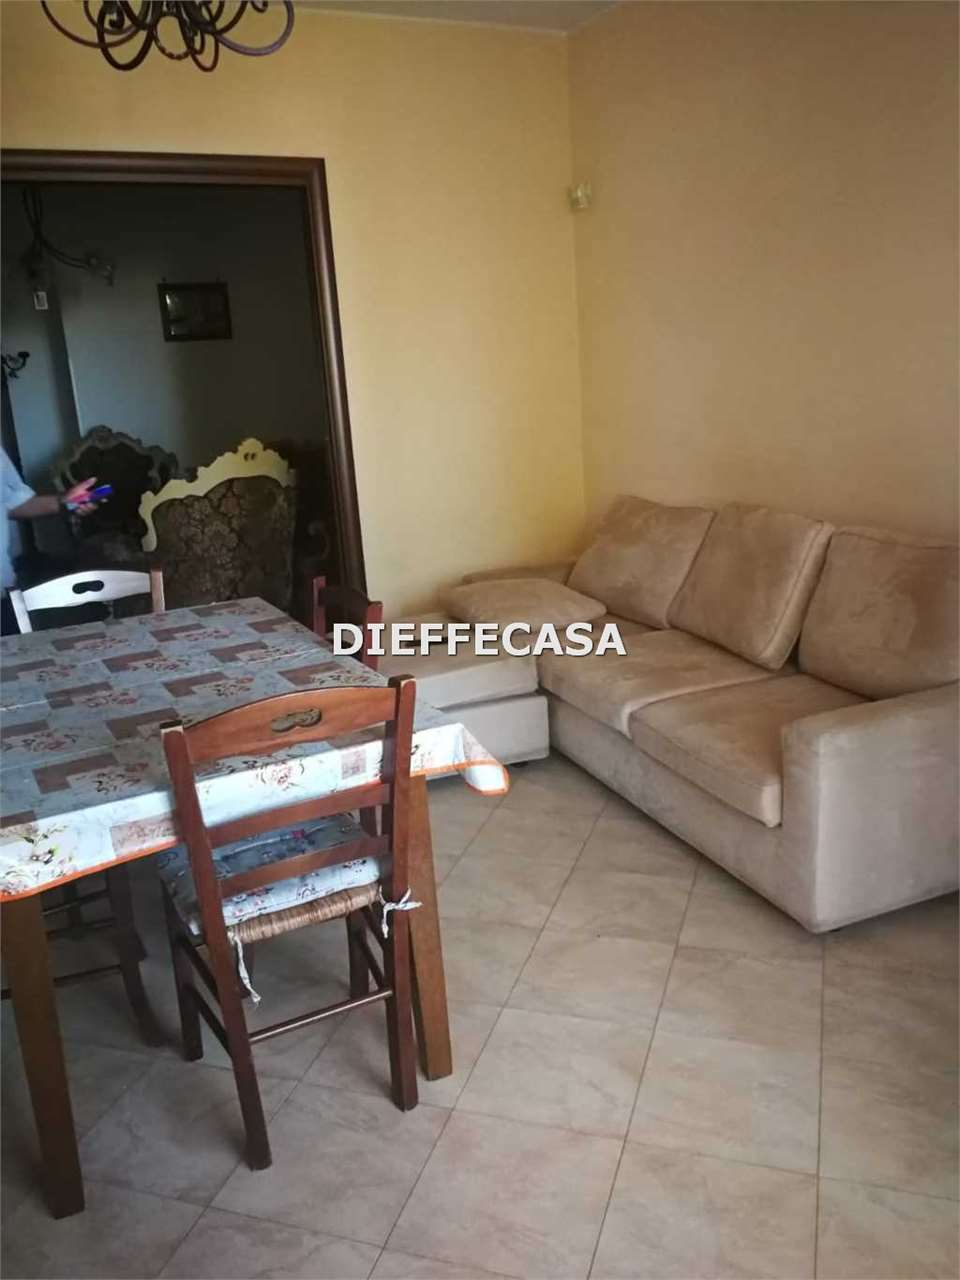 Appartamento in affitto a Marsala, 5 locali, zona Località: Periferia lato Mazara del Vallo, prezzo € 550 | CambioCasa.it